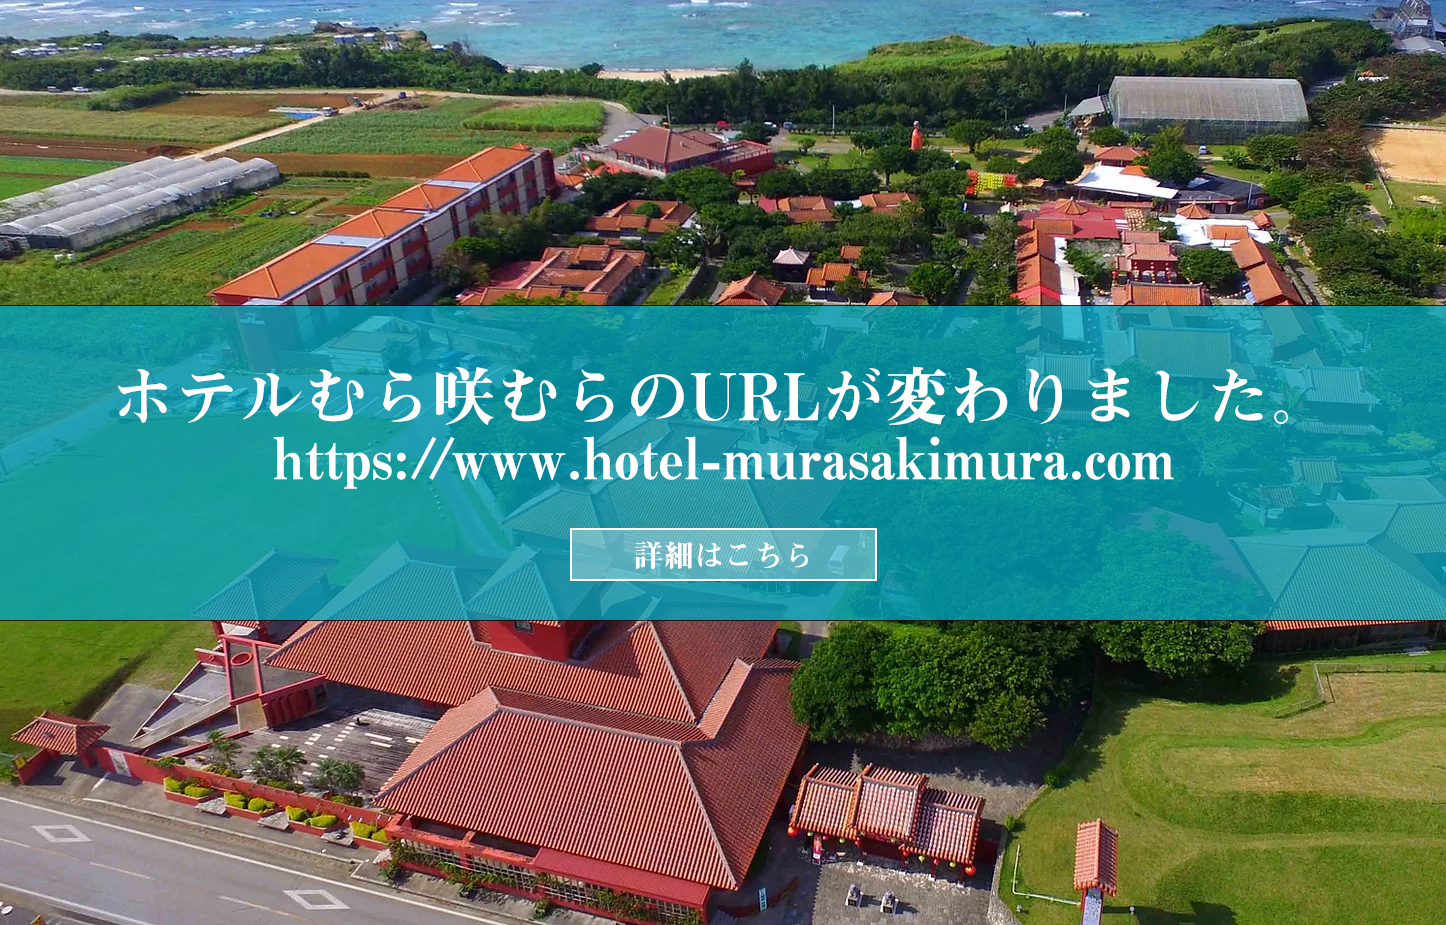 ホテルむら咲むらへようこそ！URLがhttps://www.hotel-murasakimura.comへ変わりました。